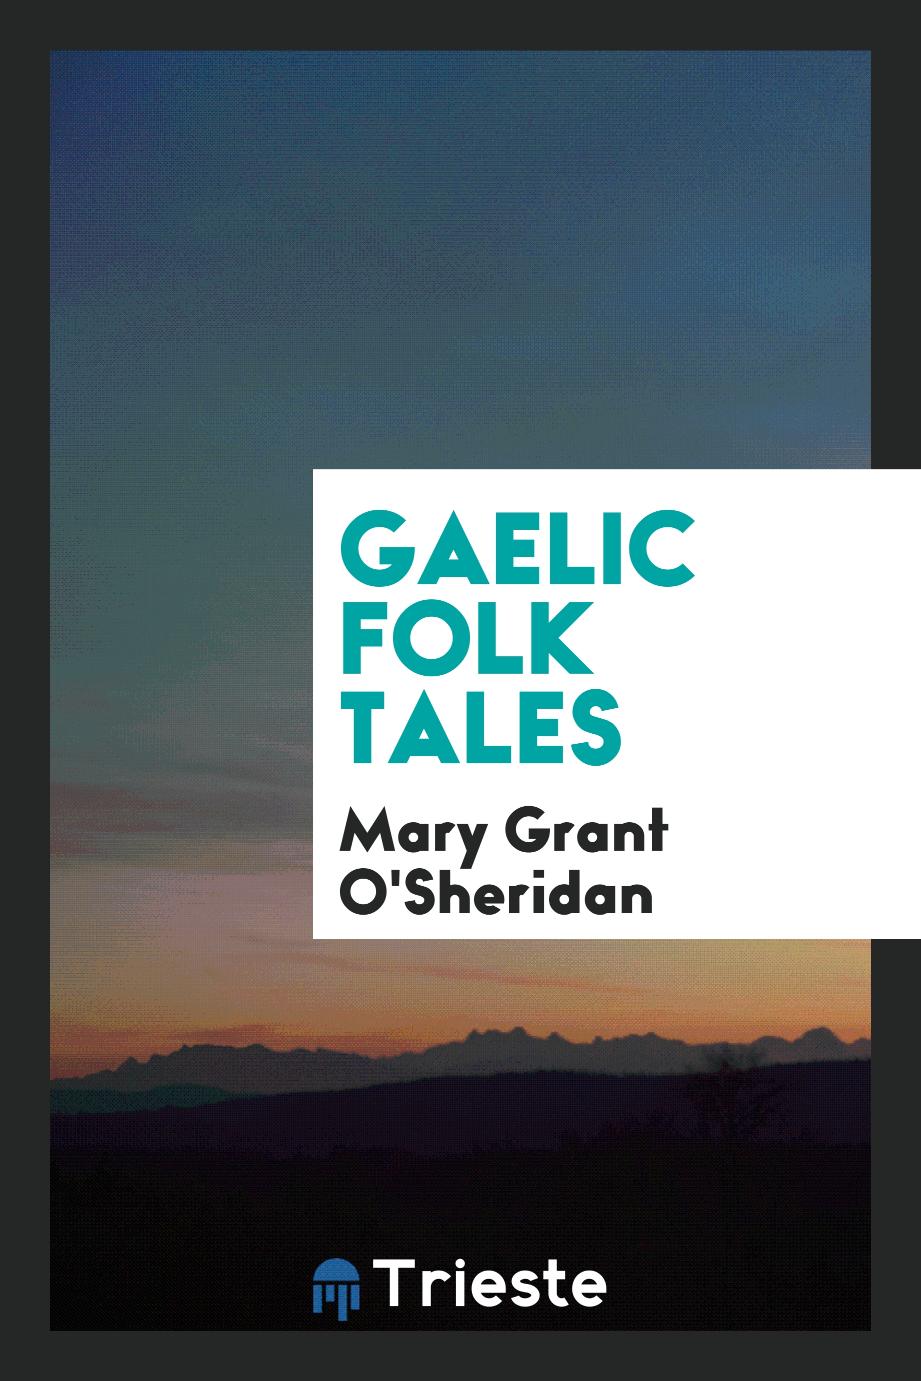 Gaelic folk tales